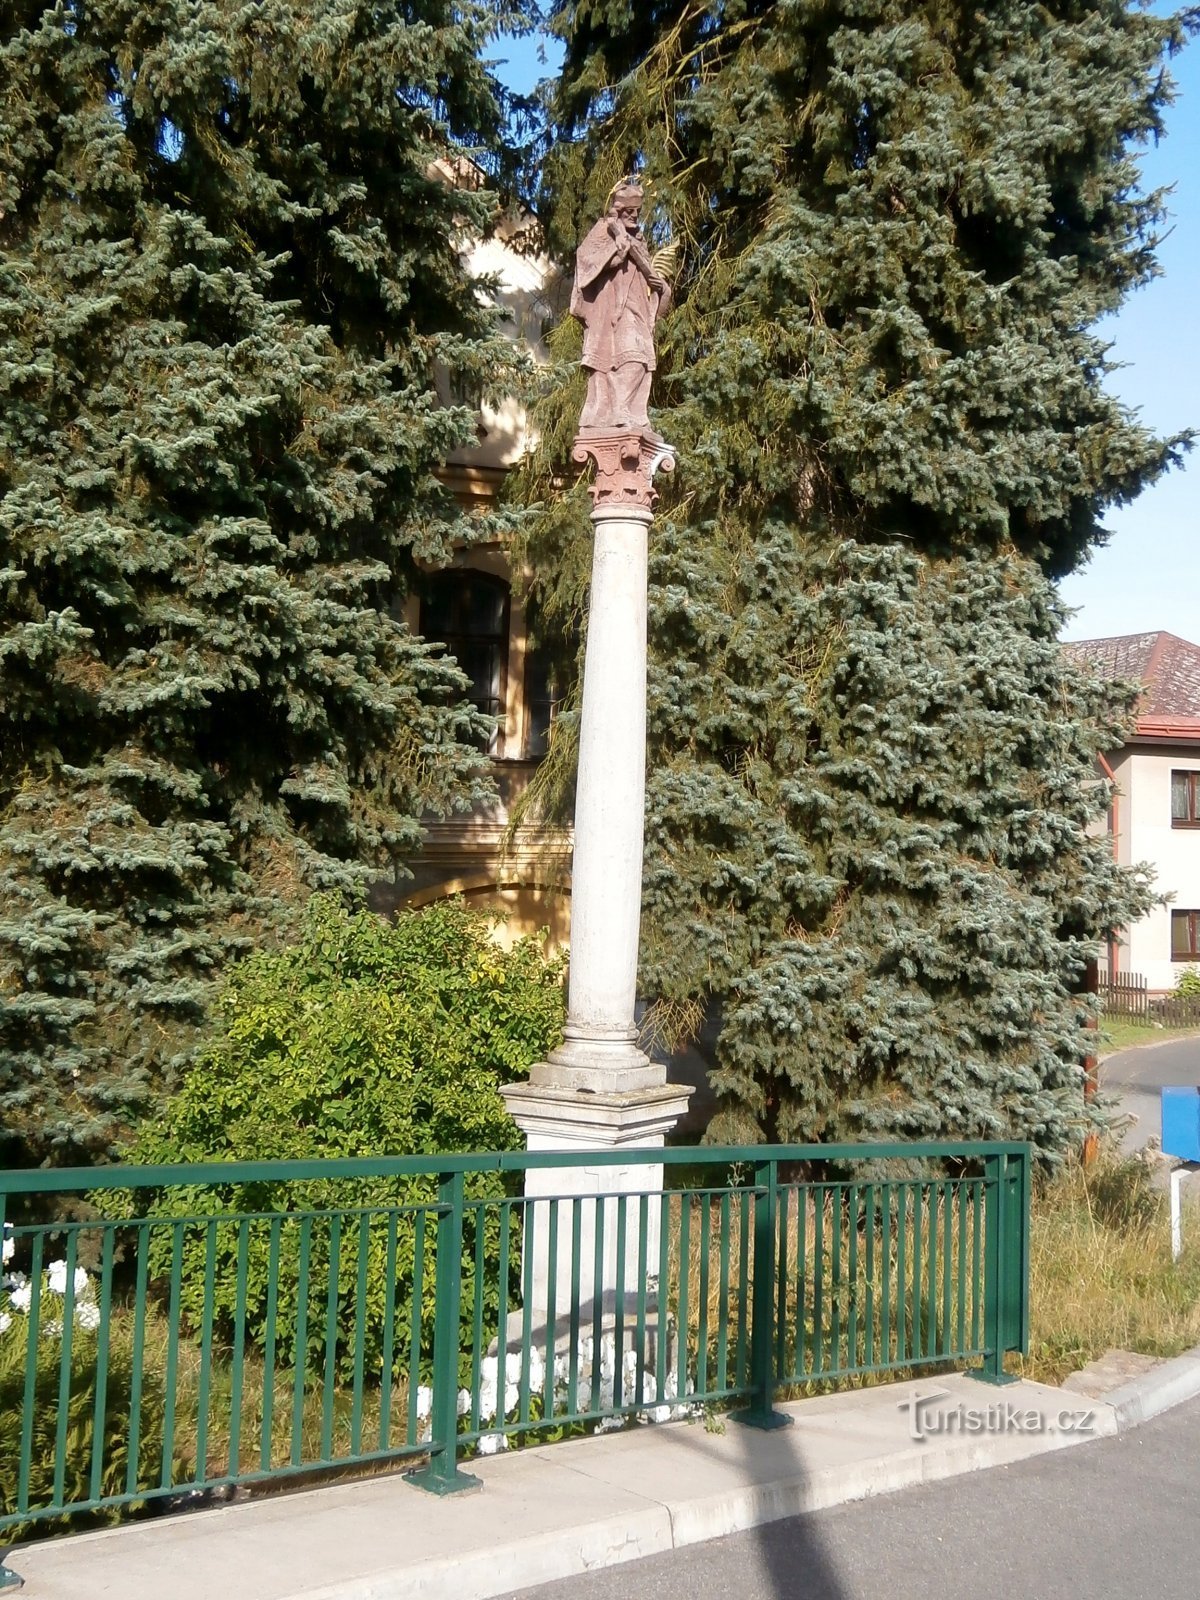 Posąg św. Jan Nepomuck za balustradą mostu koło Mandle (Havlovice)